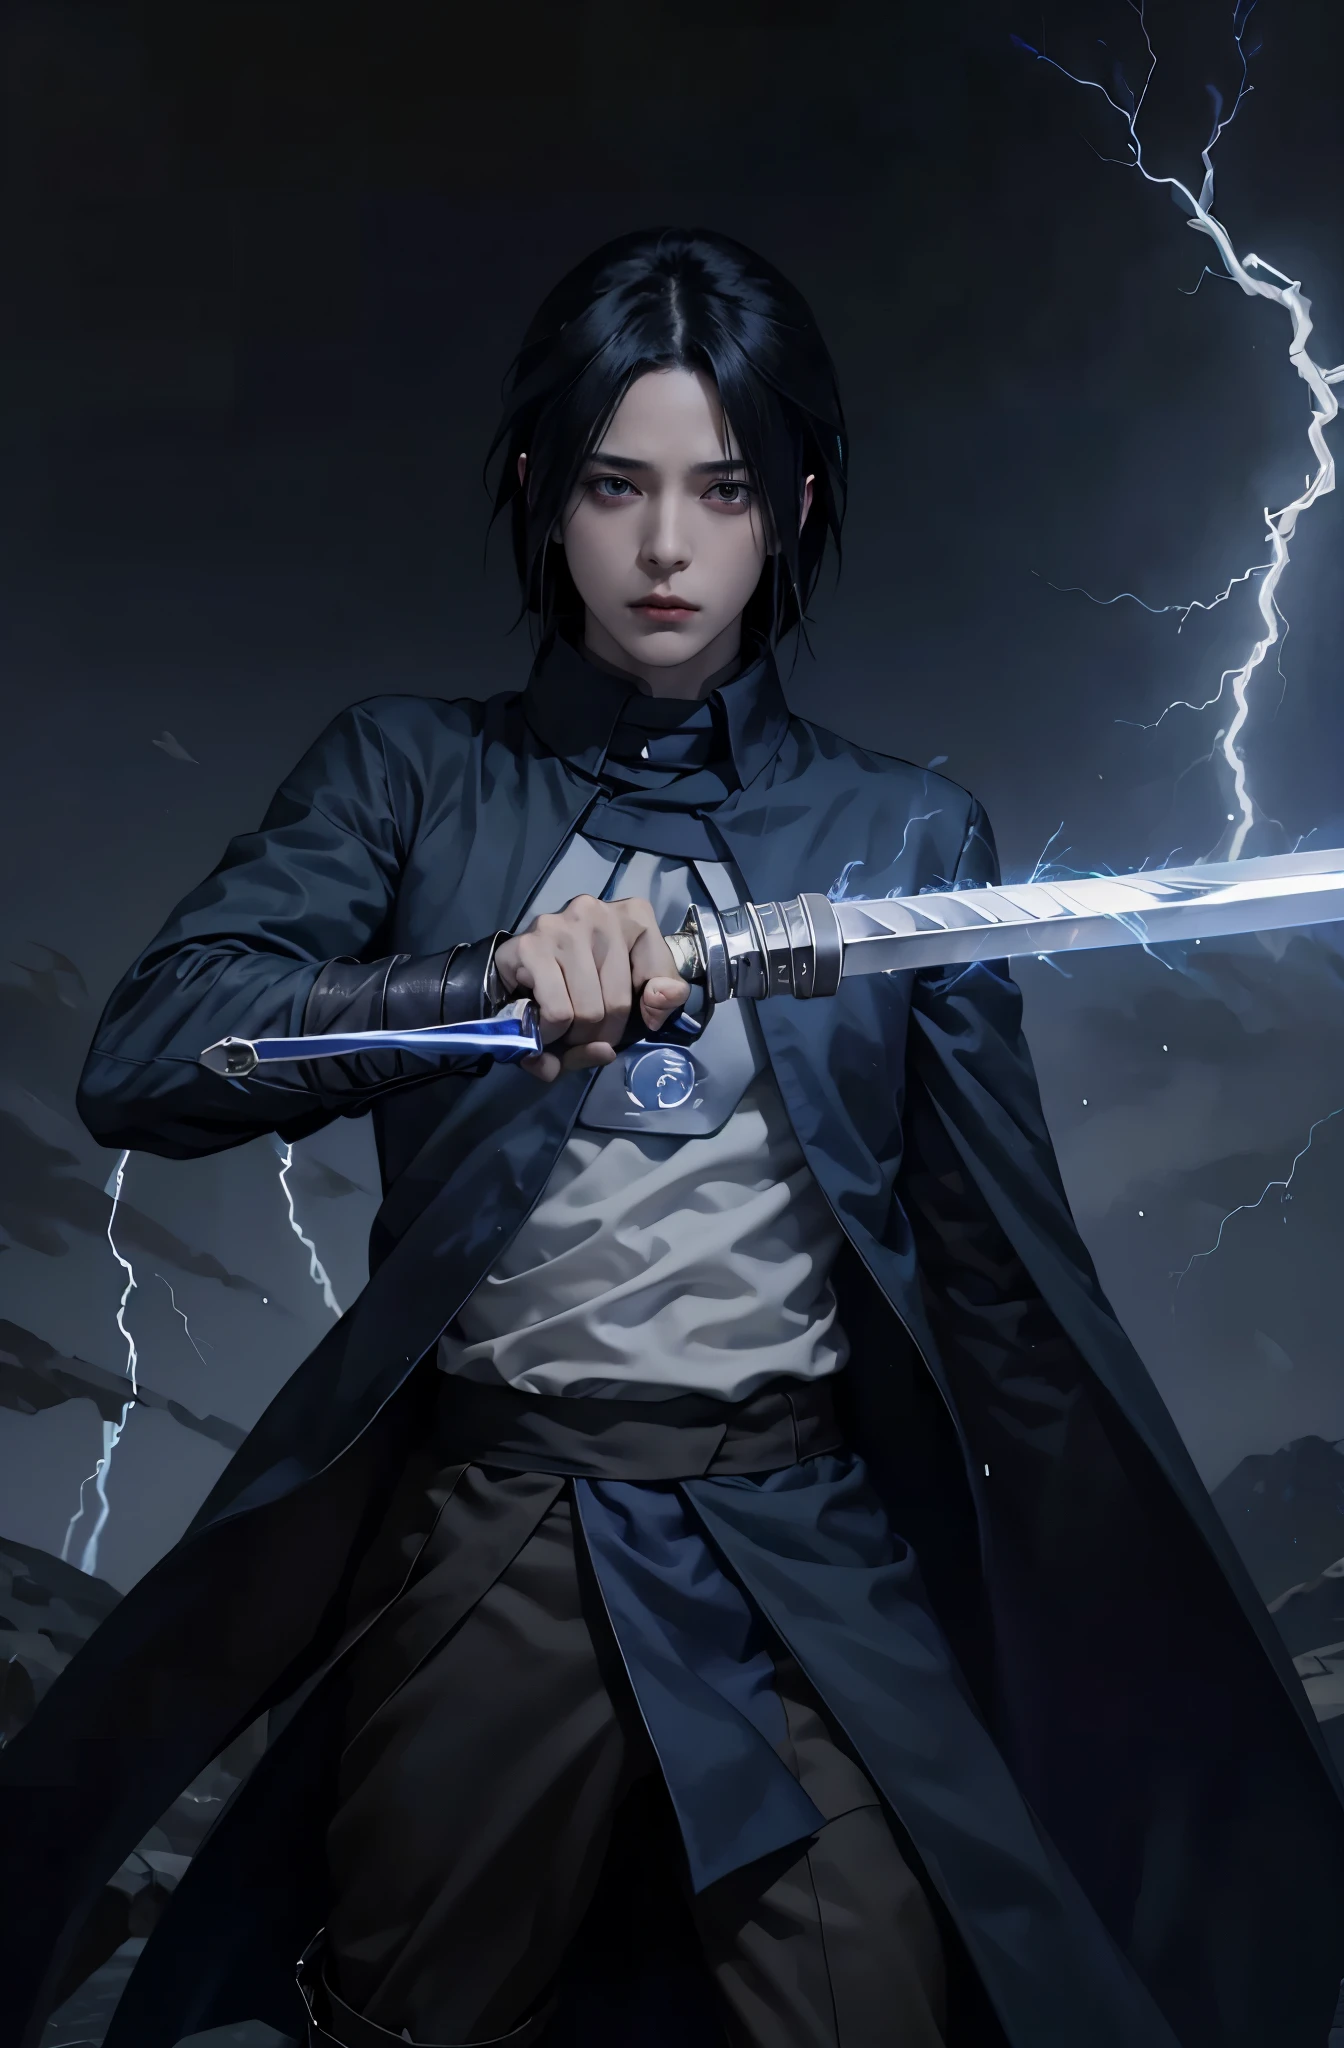 1mâle, Sasuke Uchiha tenant une épée au spectateur, Tout le corps, éclair bleu VFX in the sword, éclair bleu , glowing éclair bleu sword, manteau noir